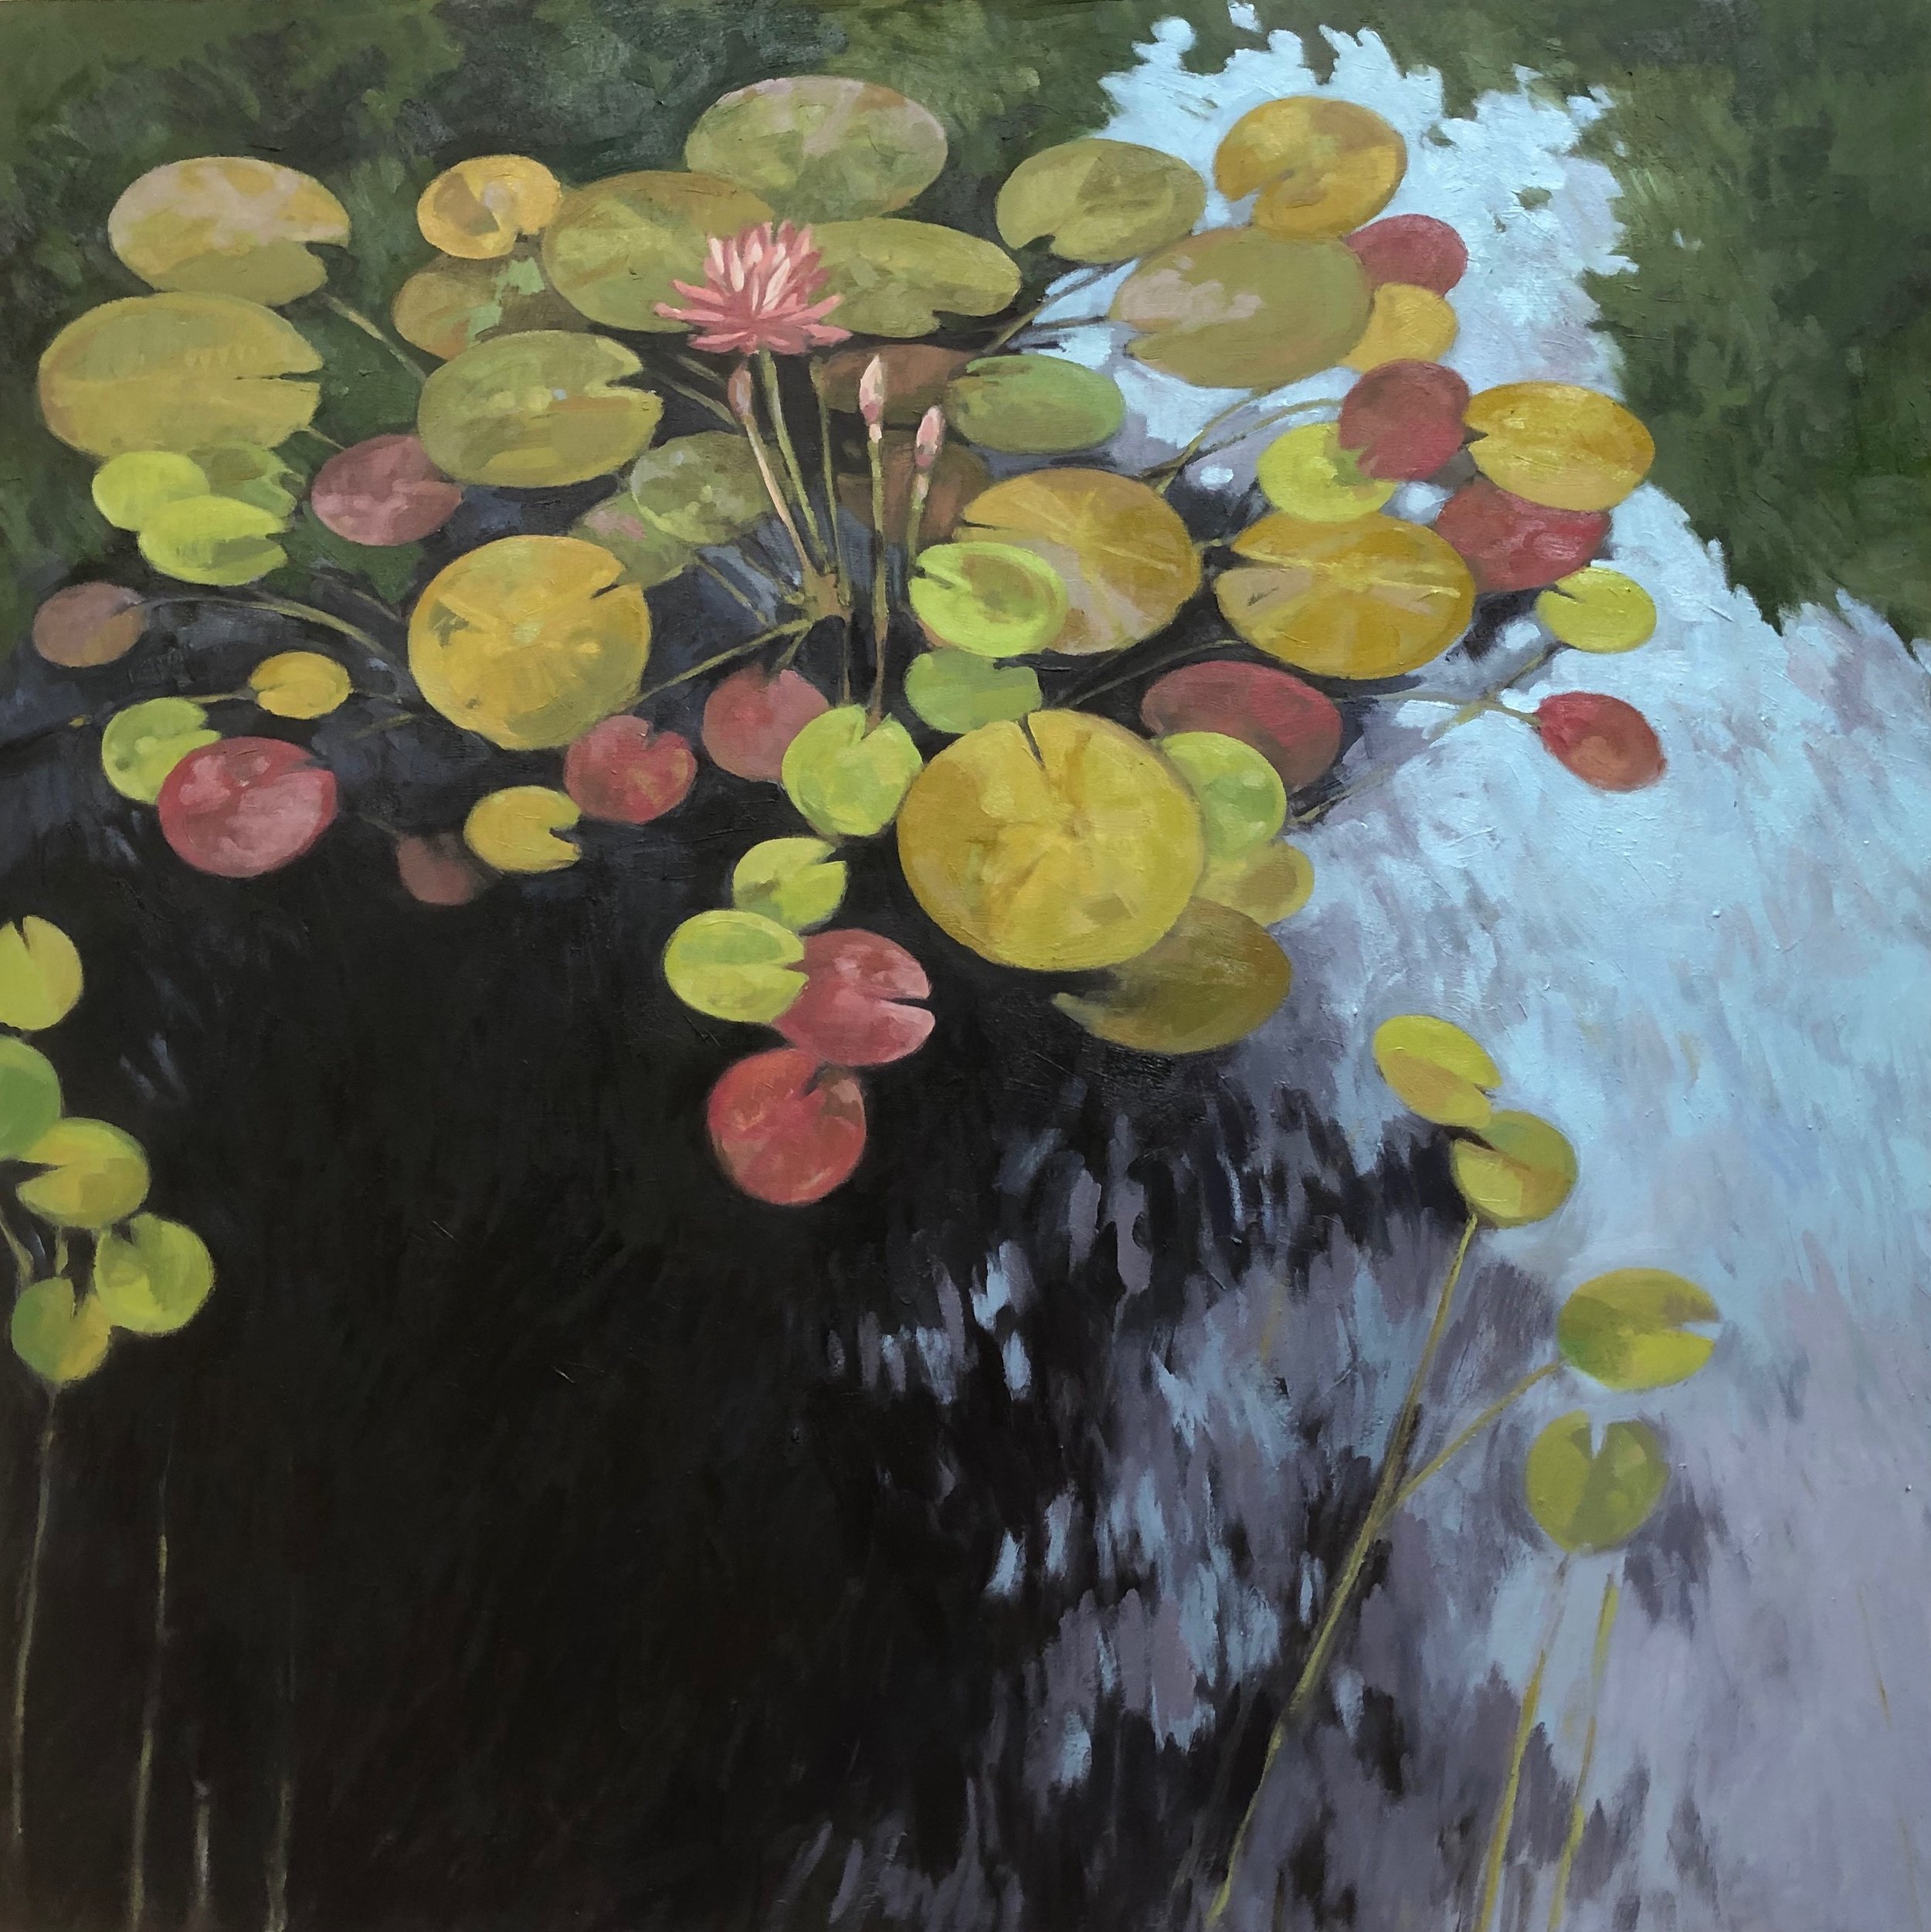  Lotus  30x30” oil on birch panel ©N Strasburg 